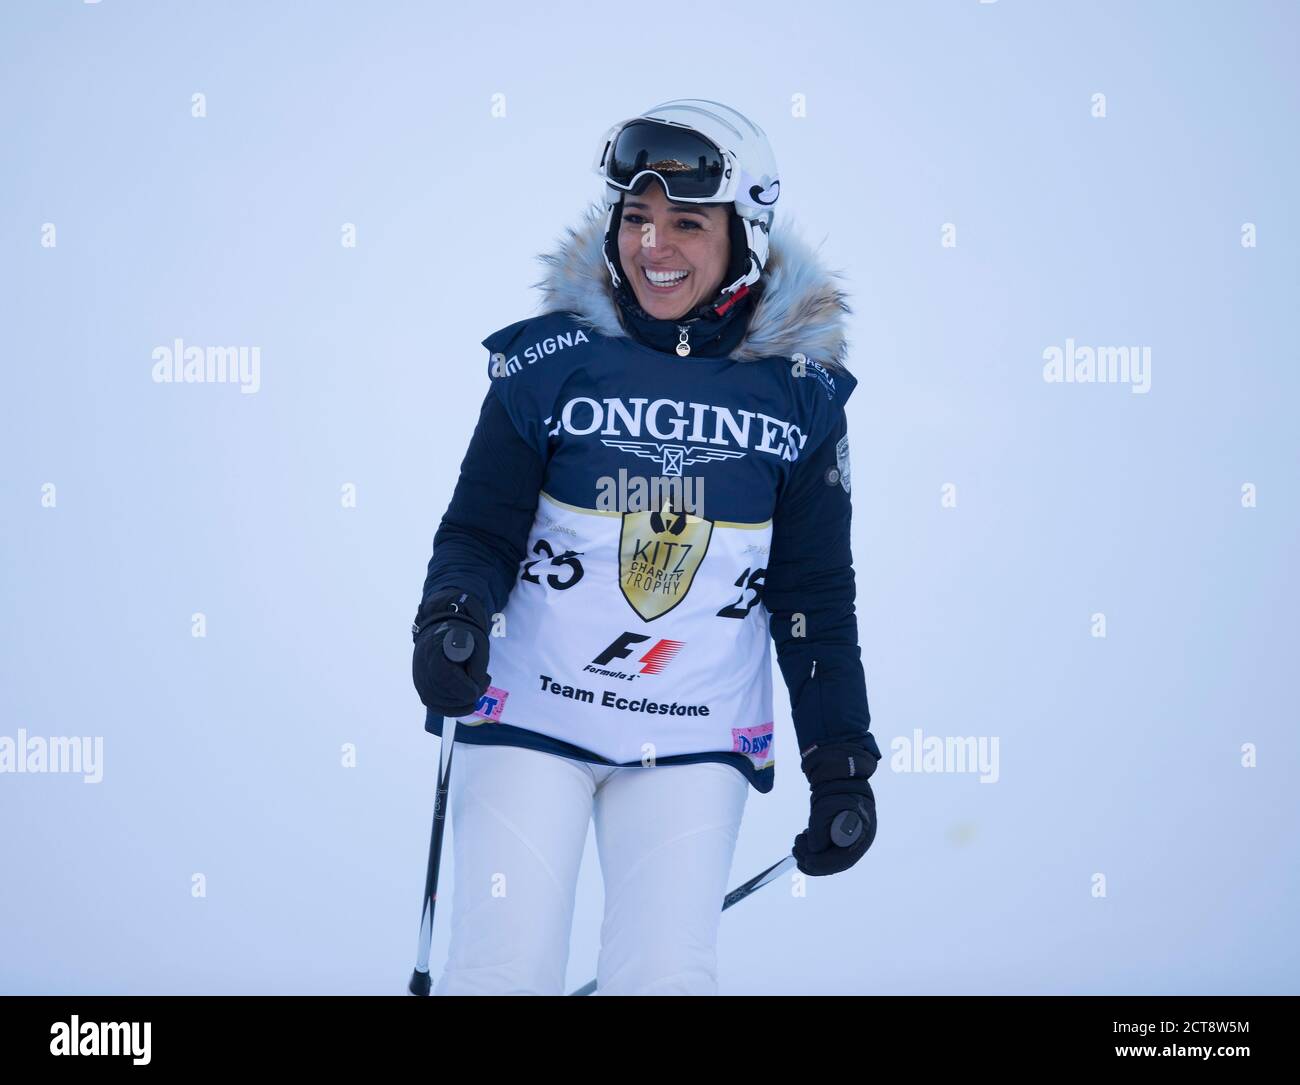 Fabiana Ecclestone (épouse de Bernie) participe à la course de ski de la Charité “Kitz Trophy” à Kitzbuhel, en Autriche. Photo : © Mark pain / Alamy Banque D'Images